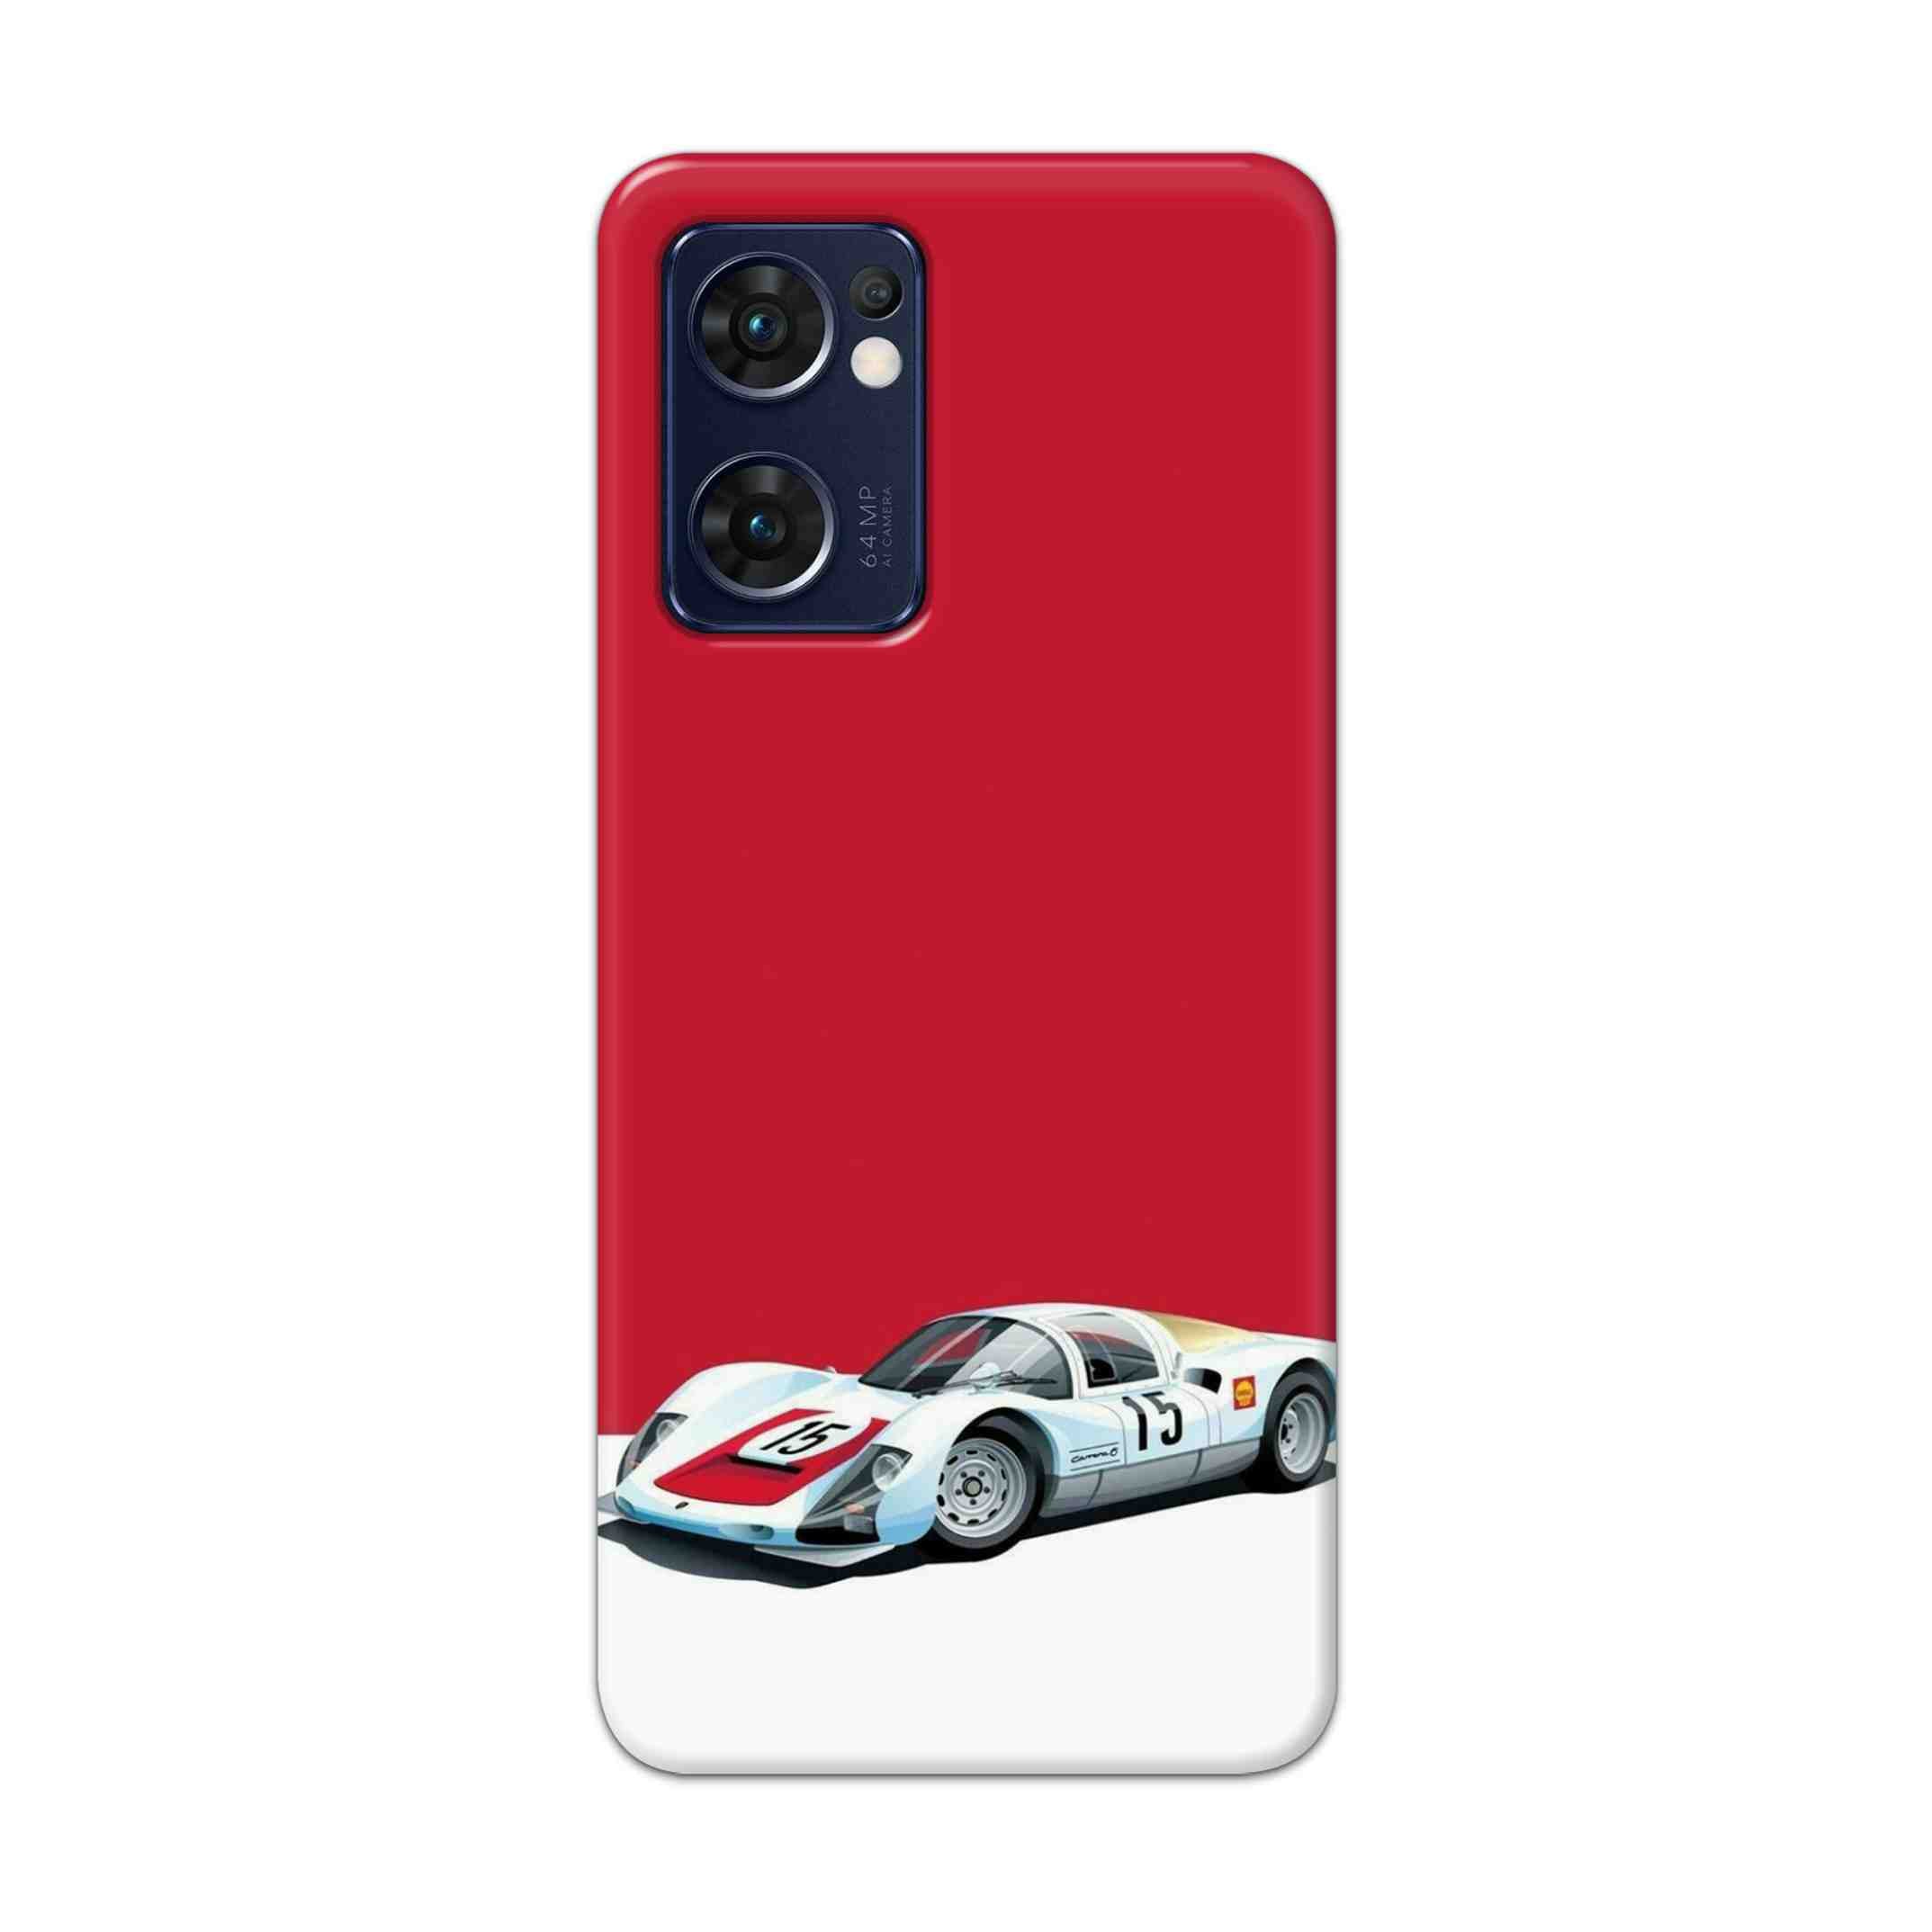 Buy Ferrari F15 Hard Back Mobile Phone Case Cover For Reno 7 5G Online